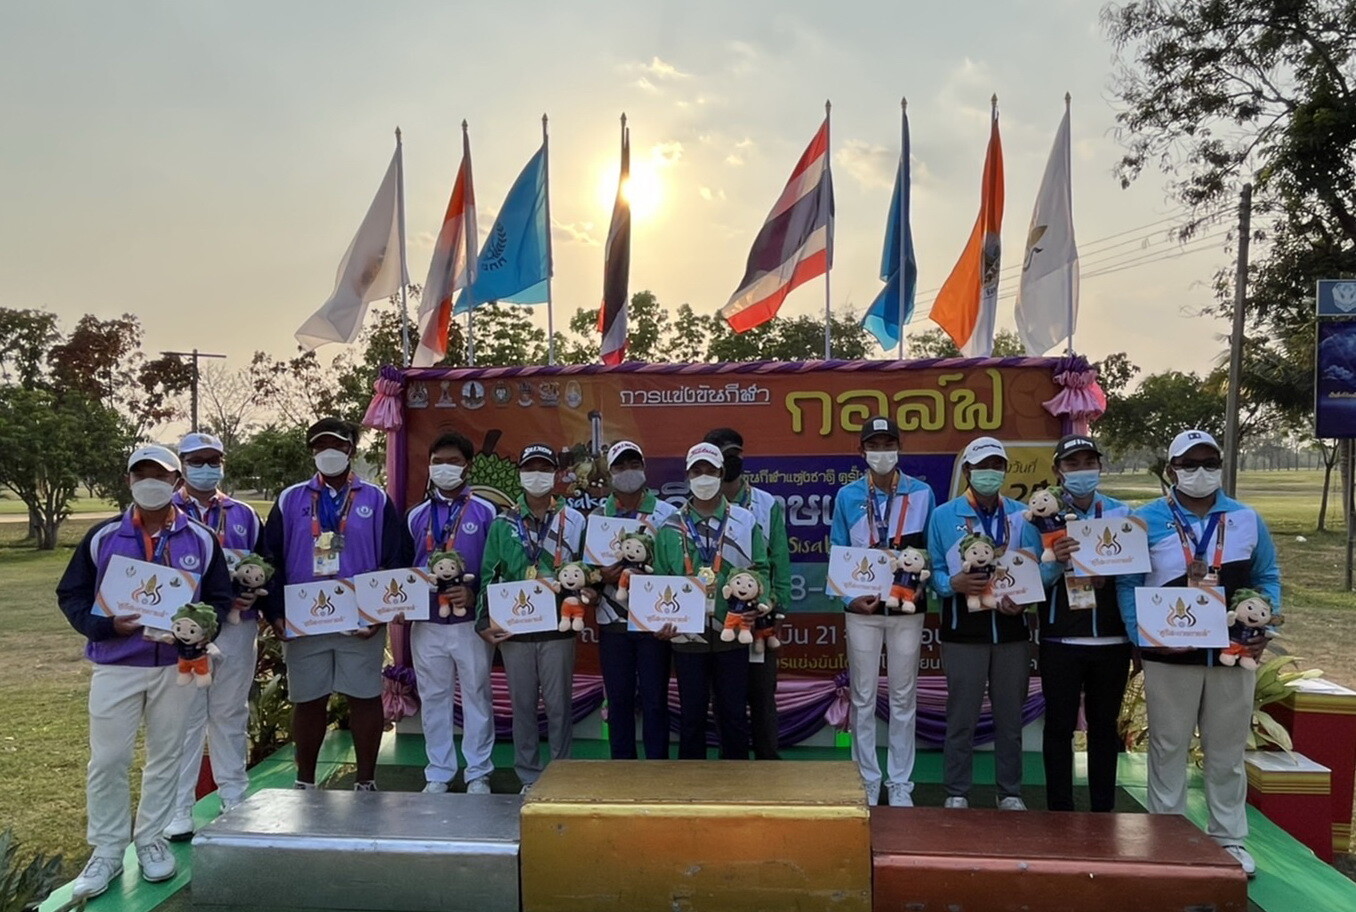 ทีมกอล์ฟนนทบุรีคว้าเหรียญ กีฬาแห่งชาติ ครั้งที่ 47 "ศรีสะเกษเกมส์"